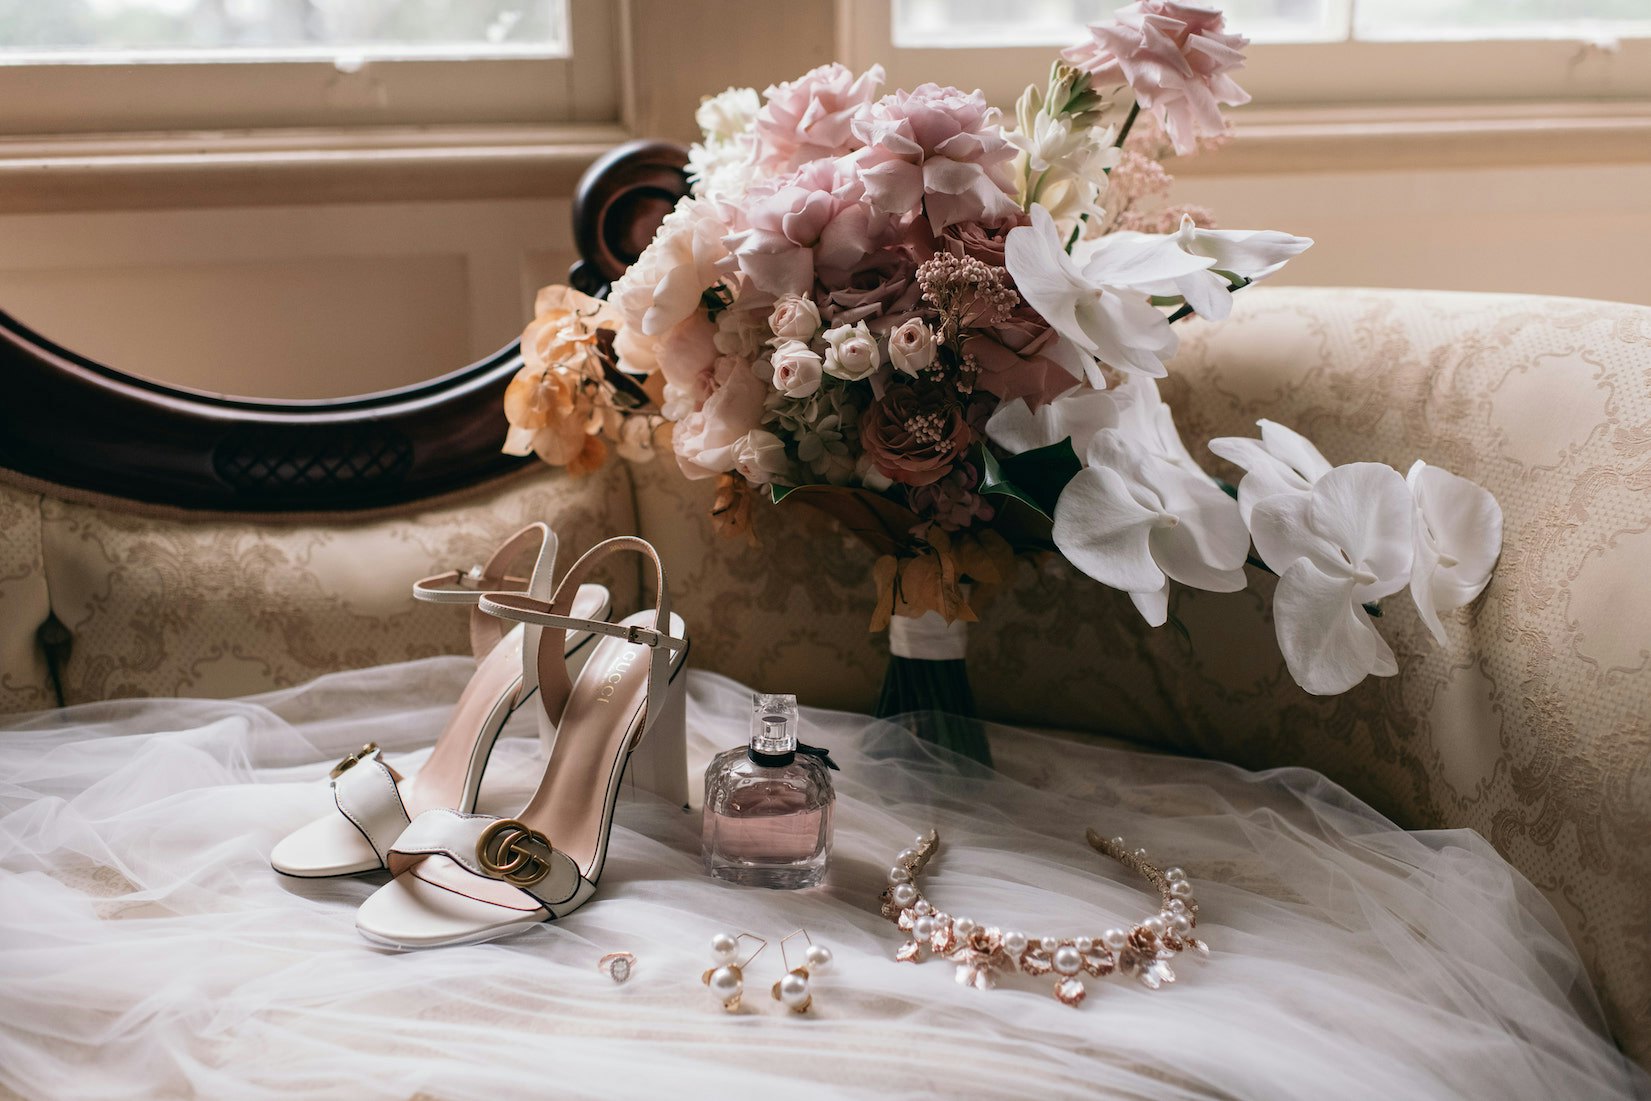 Brides shoes and bouquet 